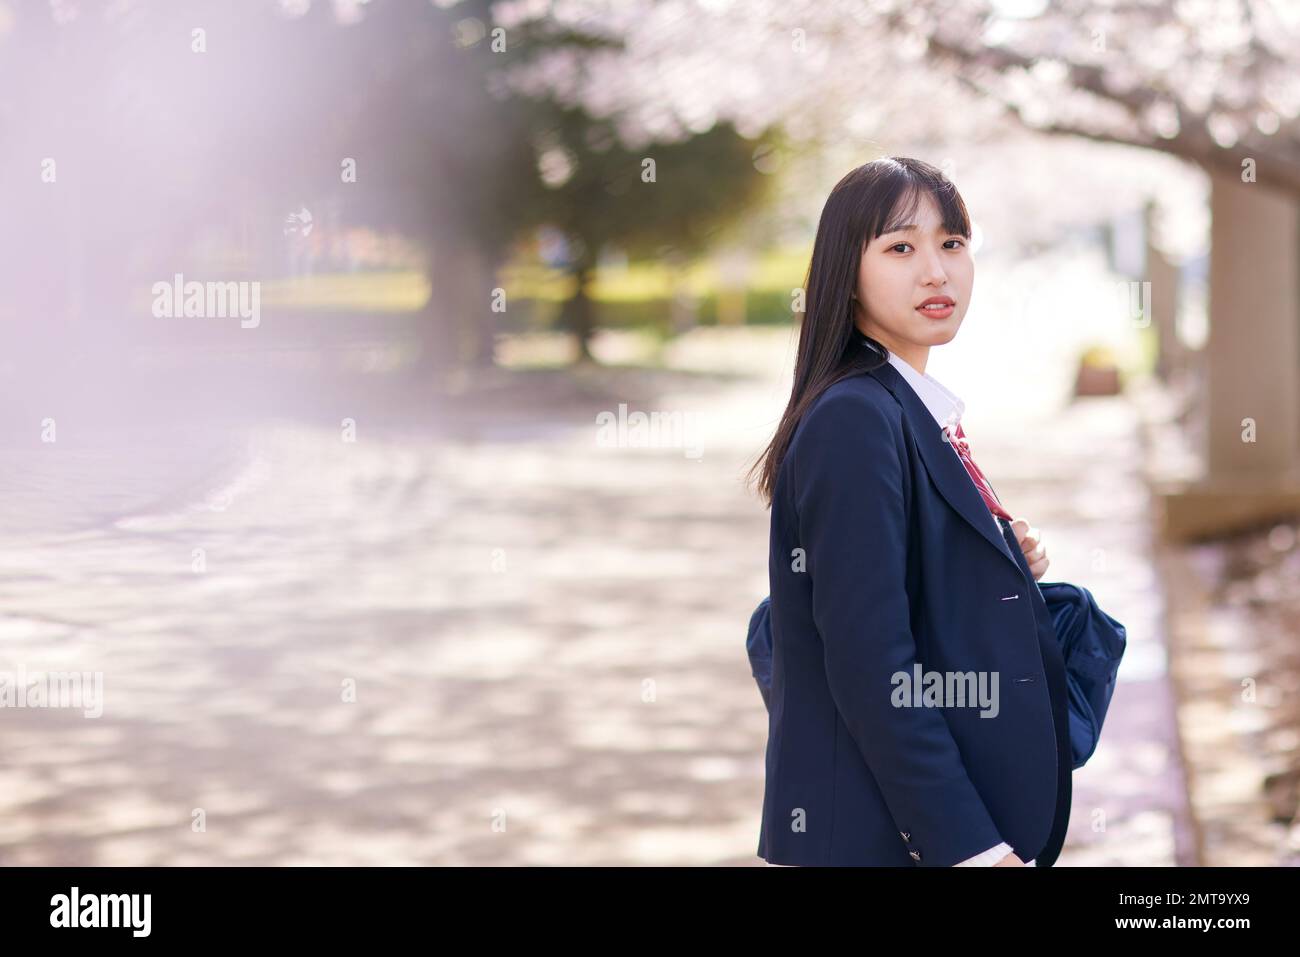 Retrato japonés del estudiante de secundaria con flores de cerezo en plena floración Foto de stock